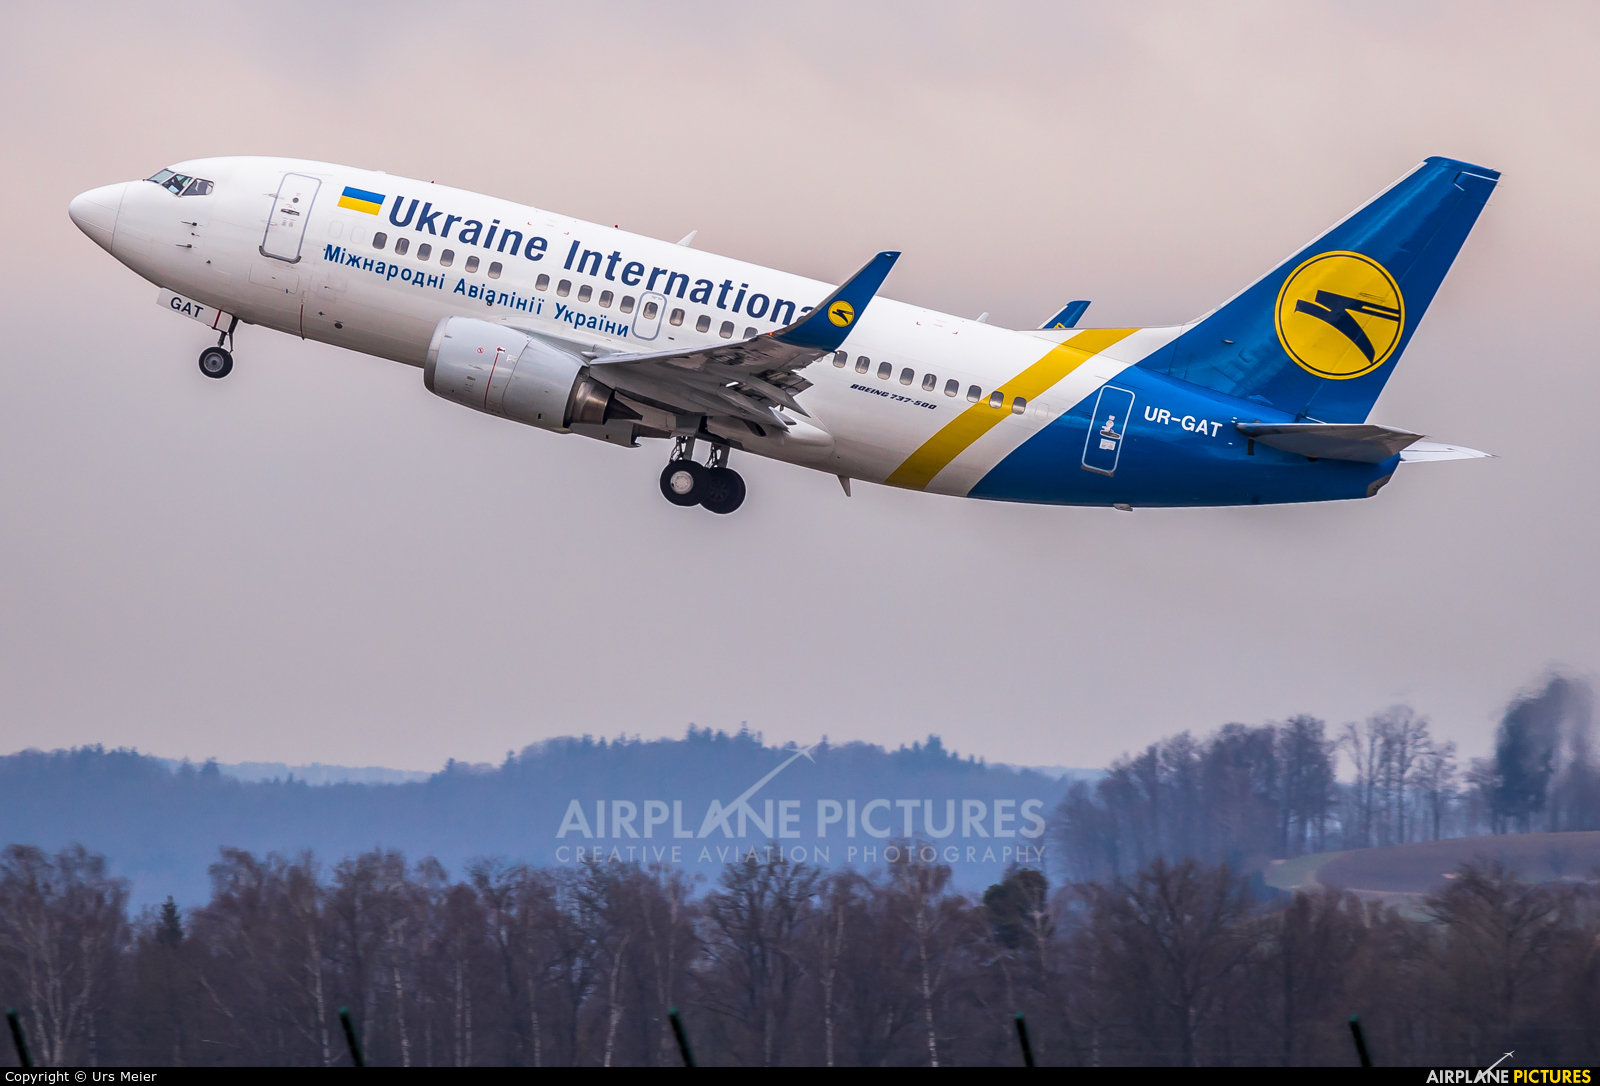 Ukraine International Airlines UR-GAT aircraft at Zurich